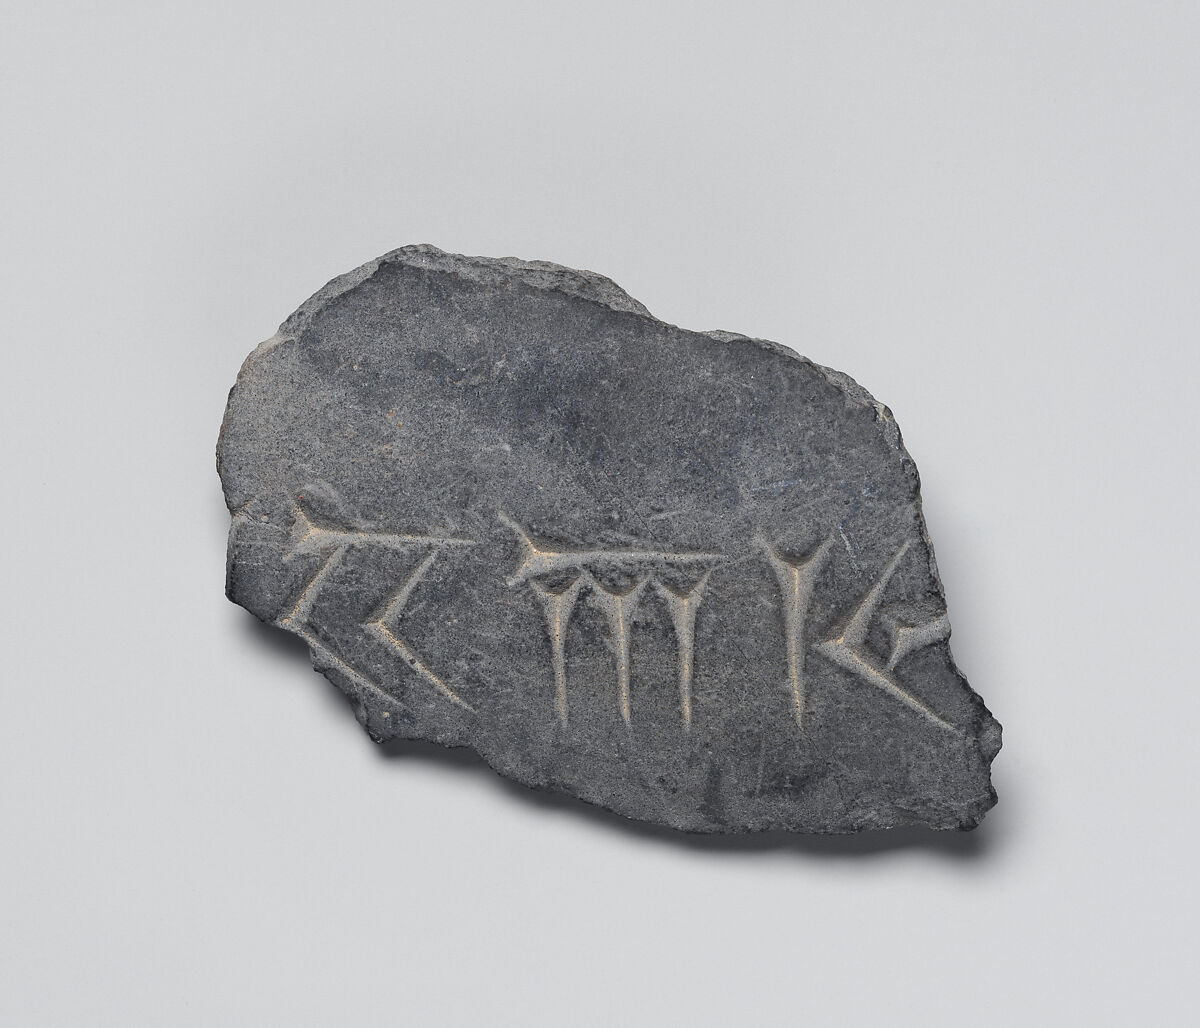 Sculpture fragment, Stone, Achaemenid 